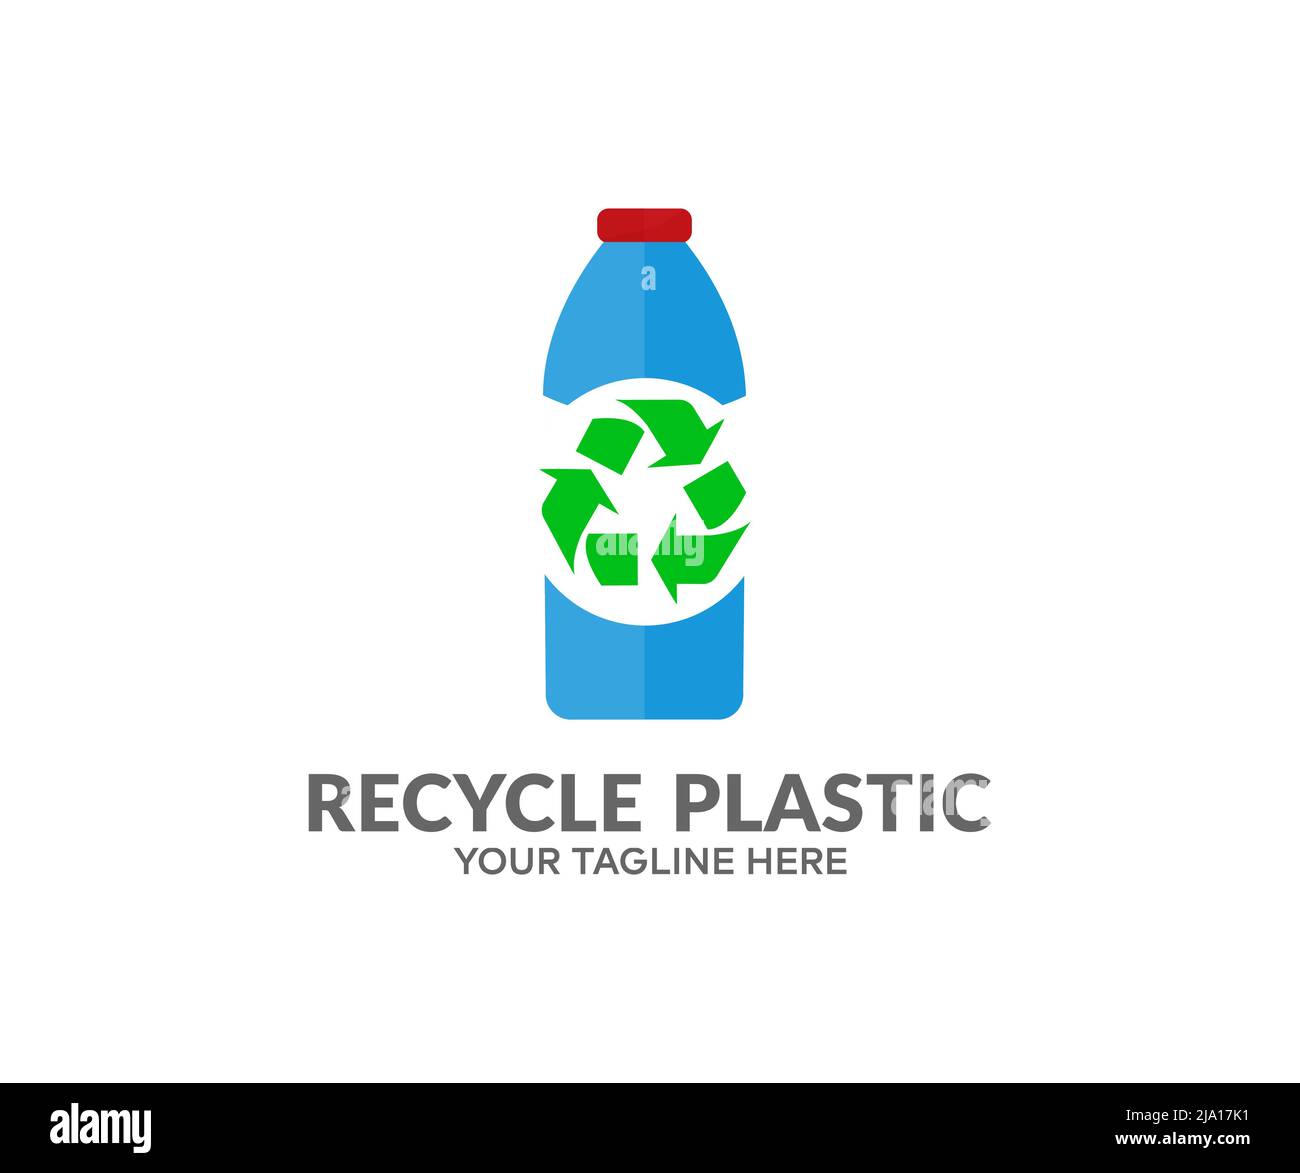 Riciclaggio bottiglia in plastica, imballaggio in plastica per alimenti, riutilizzo dei rifiuti, riciclaggio, logo senza plastica. Riciclaggio della plastica. Inquinamento ambientale. Illustrazione Vettoriale